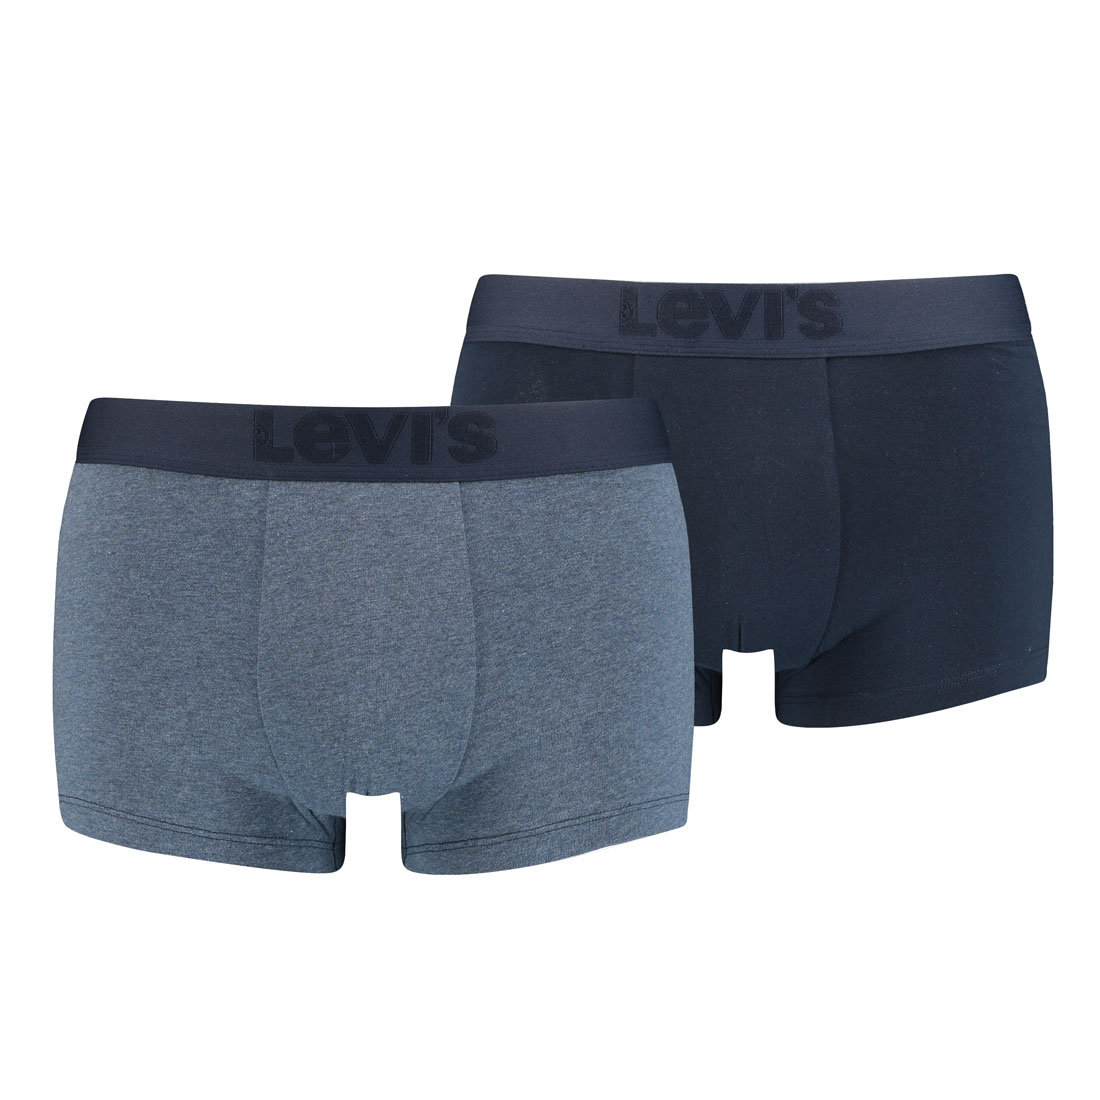 2er Pack Levis Herren Premium Trunk Boxer Shorts Unterhose Pant Unterwäsche M, Navy von Levi's